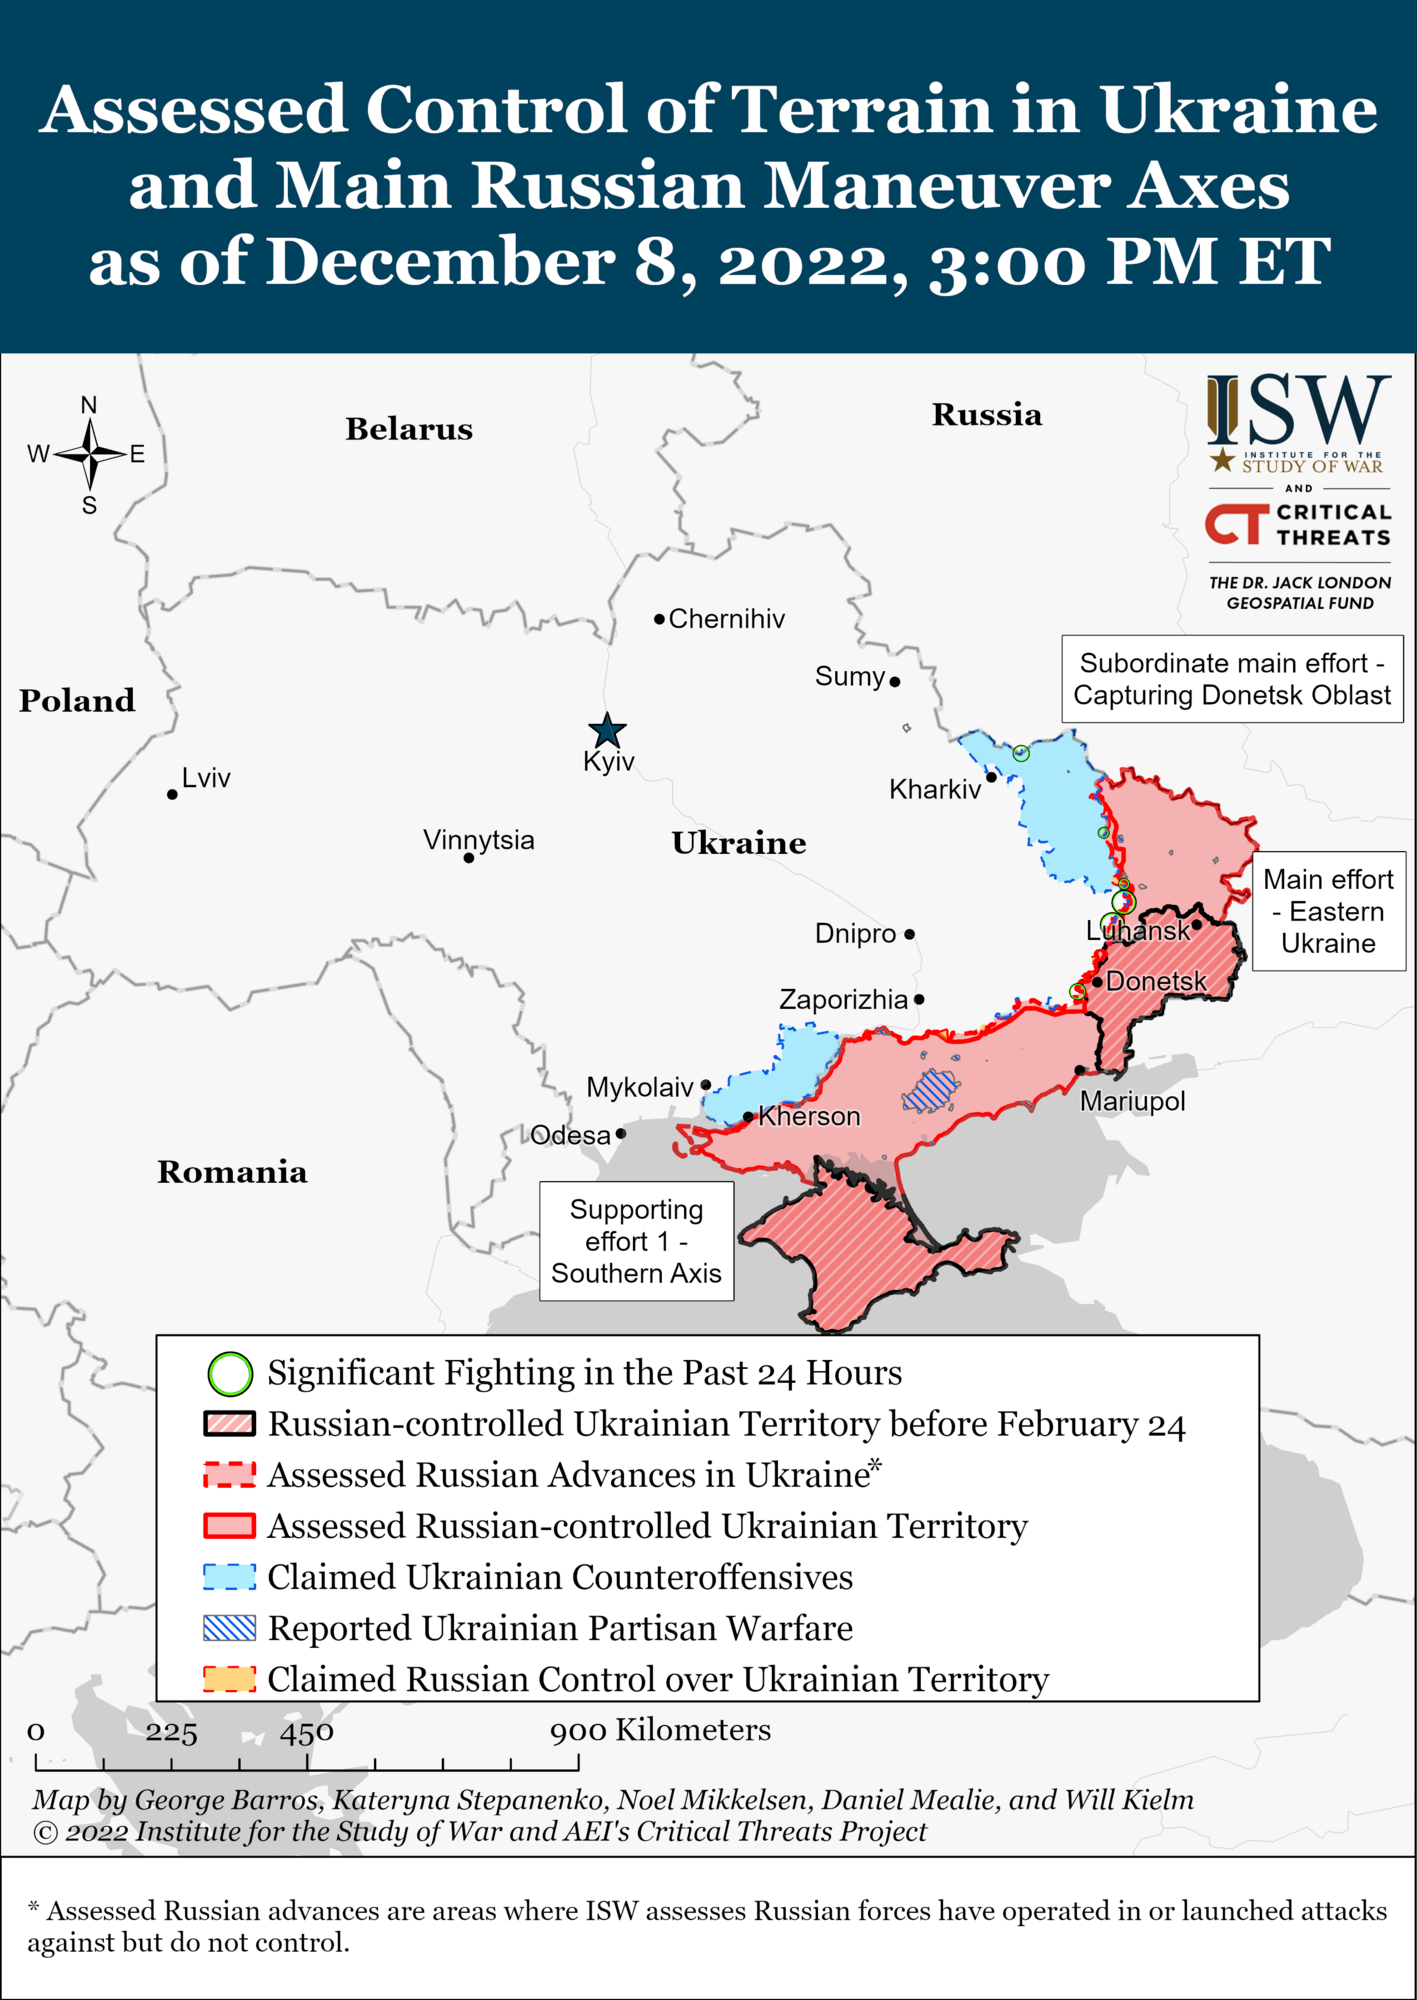 Заяви Кремля про цілі війни проти України є хитрим маневром: в ISW розповіли, чого хочуть у Росії 